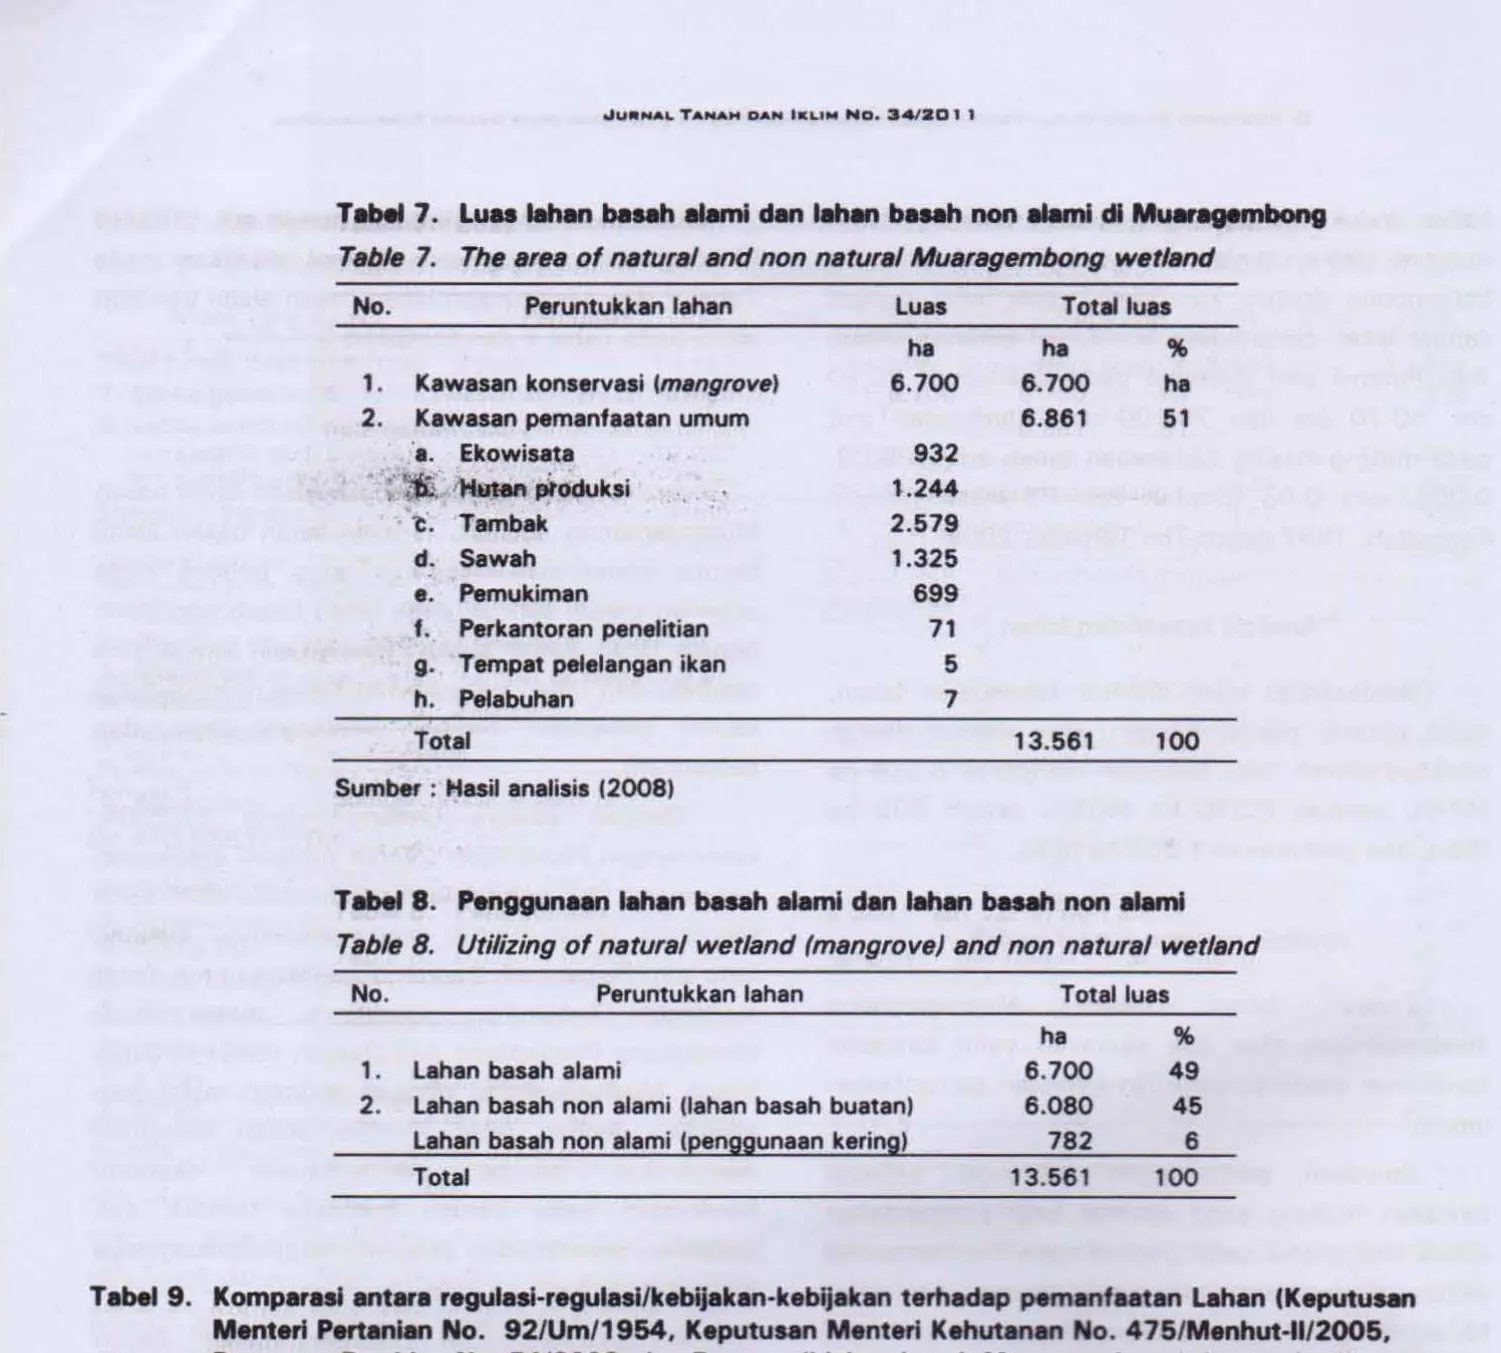 Table 7. Tha araa of natural and non natural MuarllJfll/Jfllbong watlend 